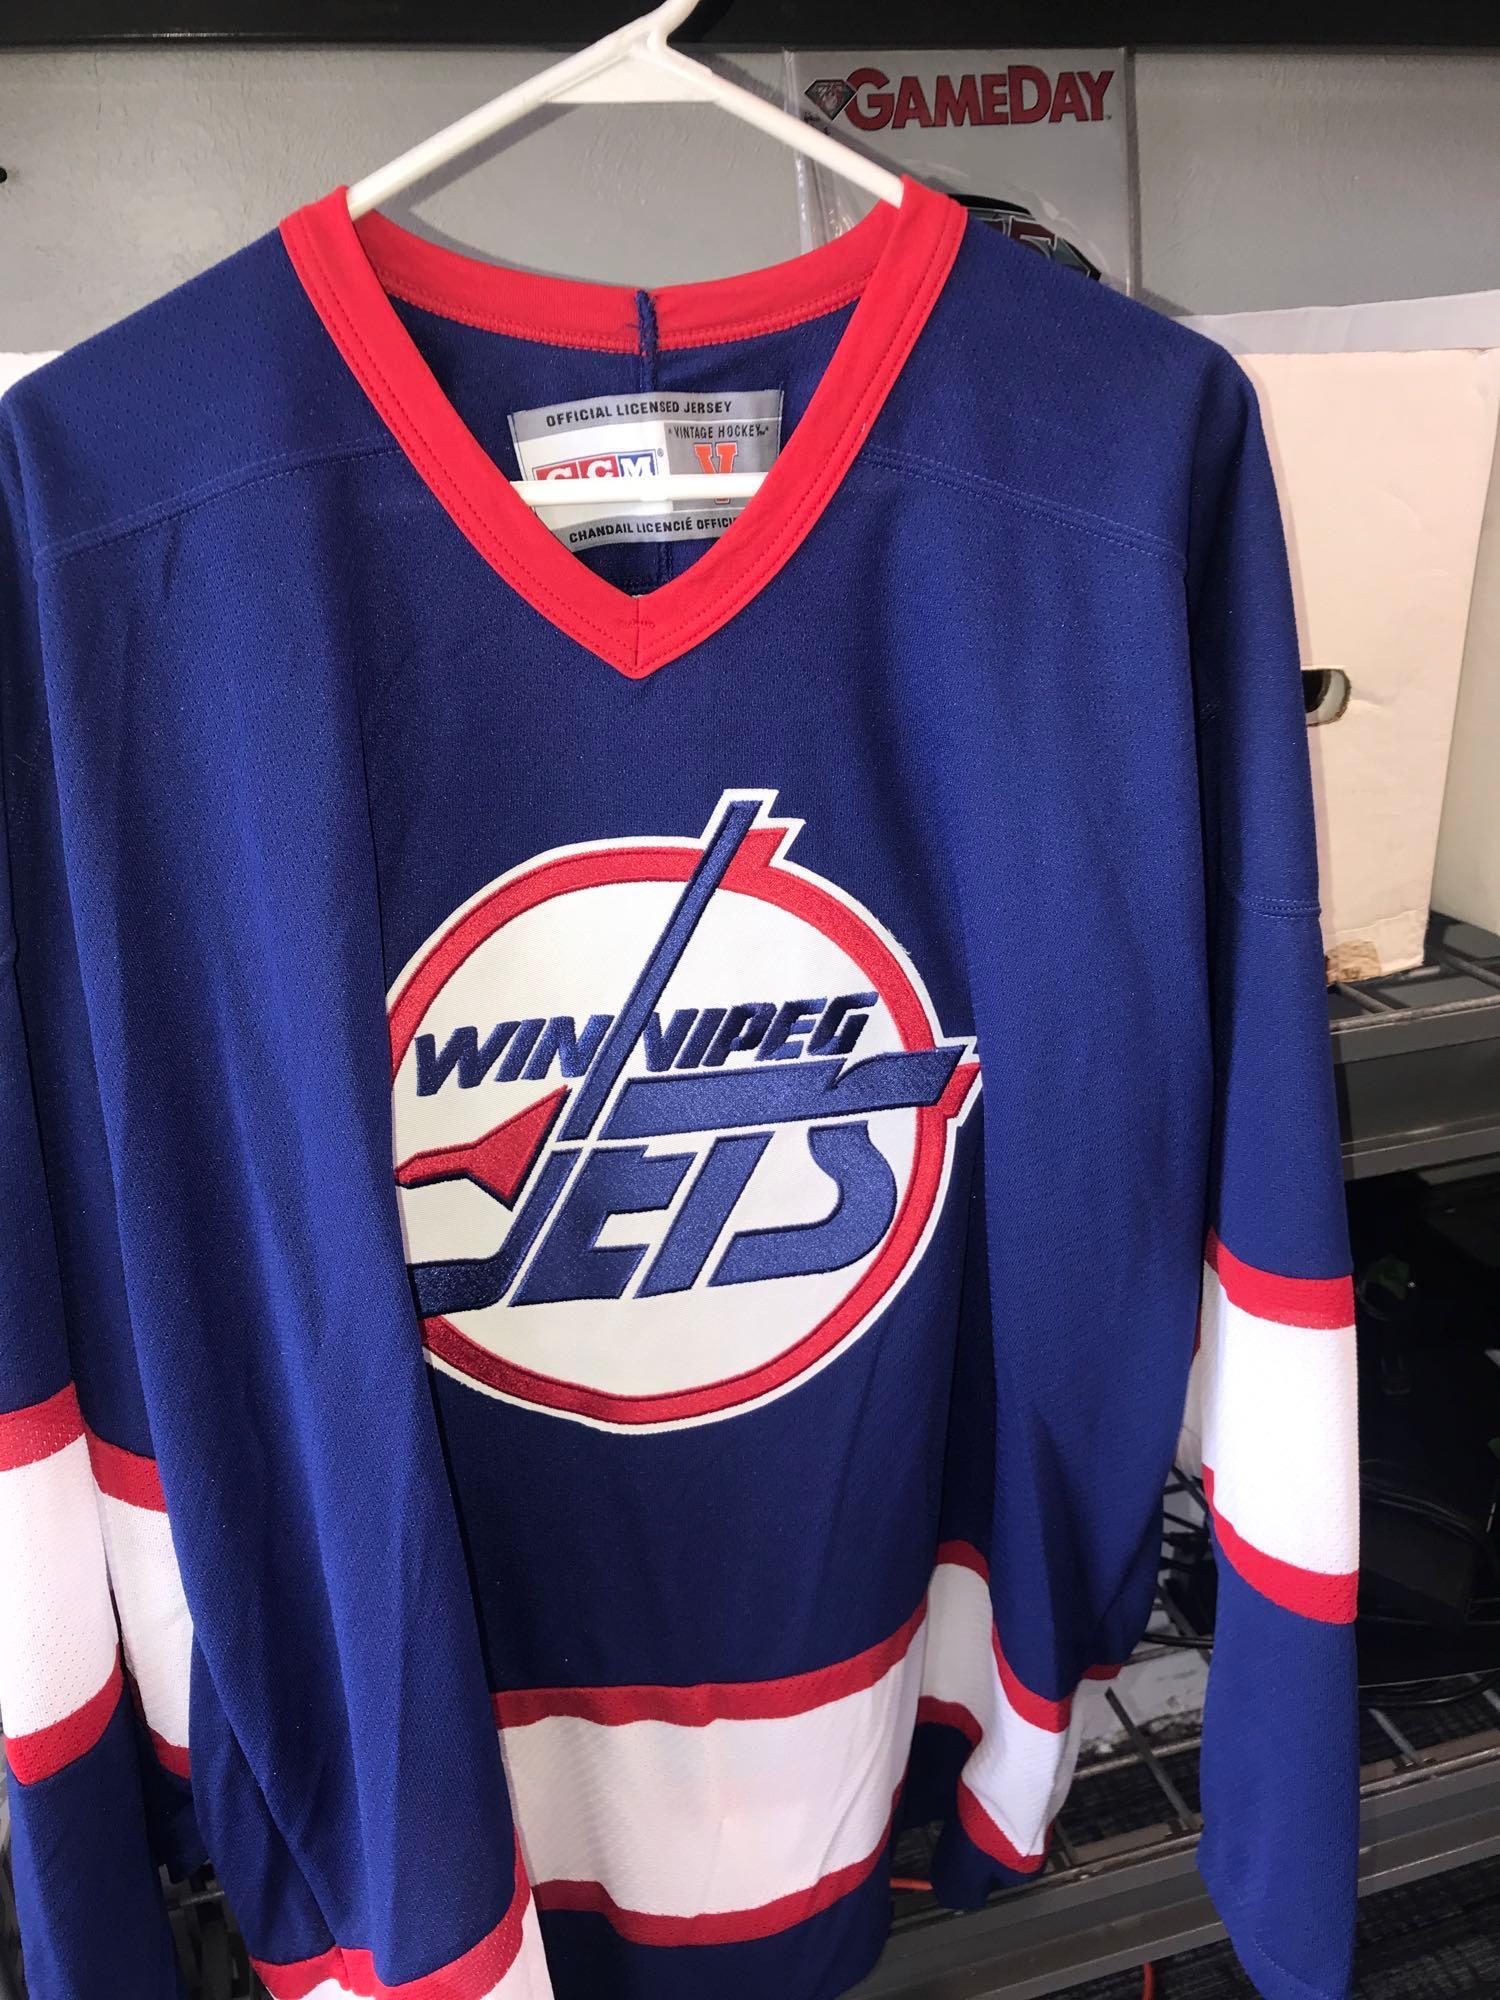 Kris Letang Jersey NHL Fan Apparel & Souvenirs for sale